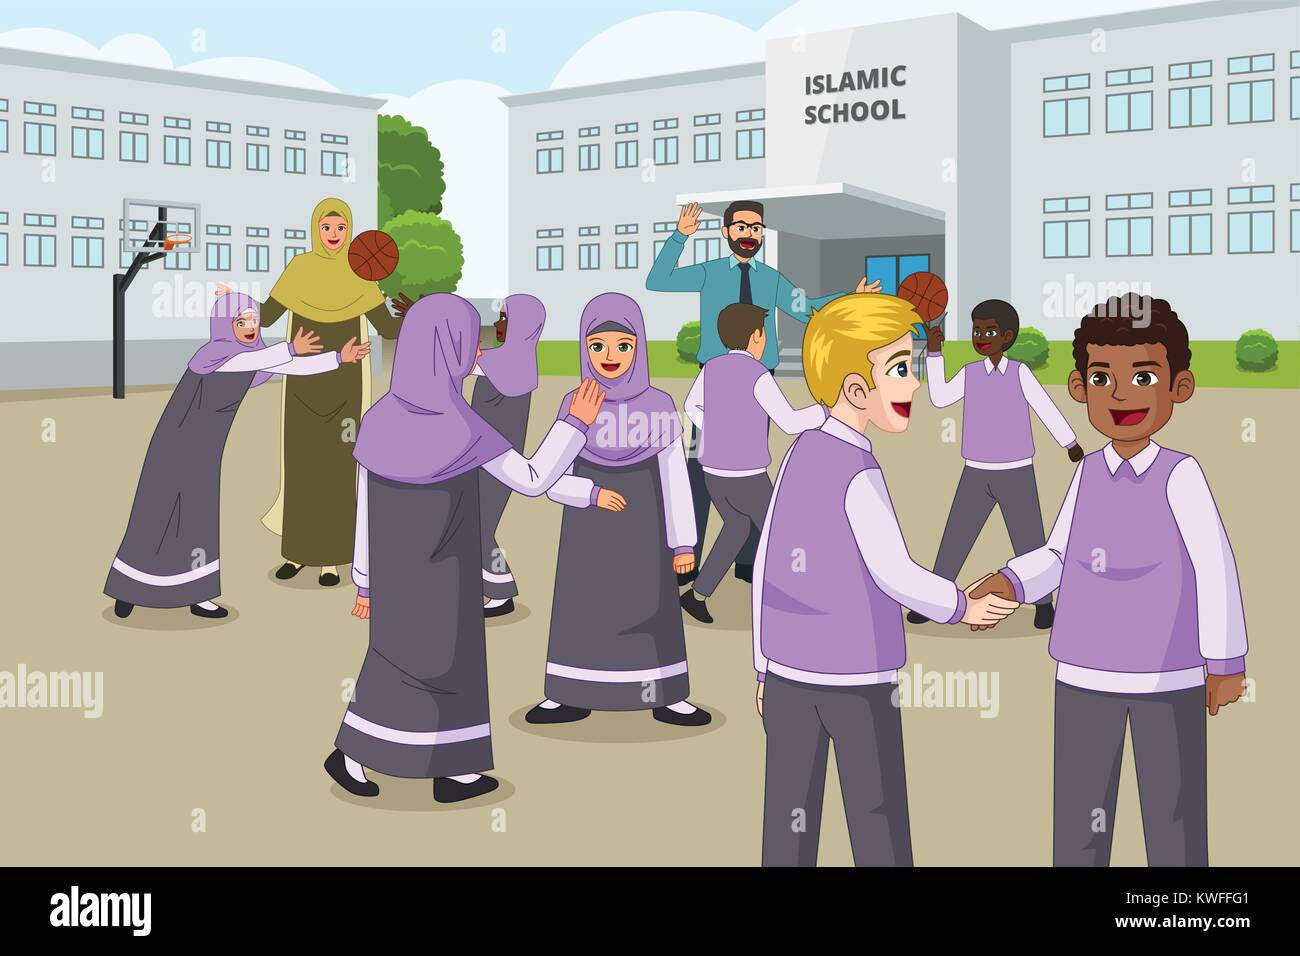 Un vecteur illustration d'enfants musulmans jouant en Cour d'école pendant la récréation Illustration de Vecteur